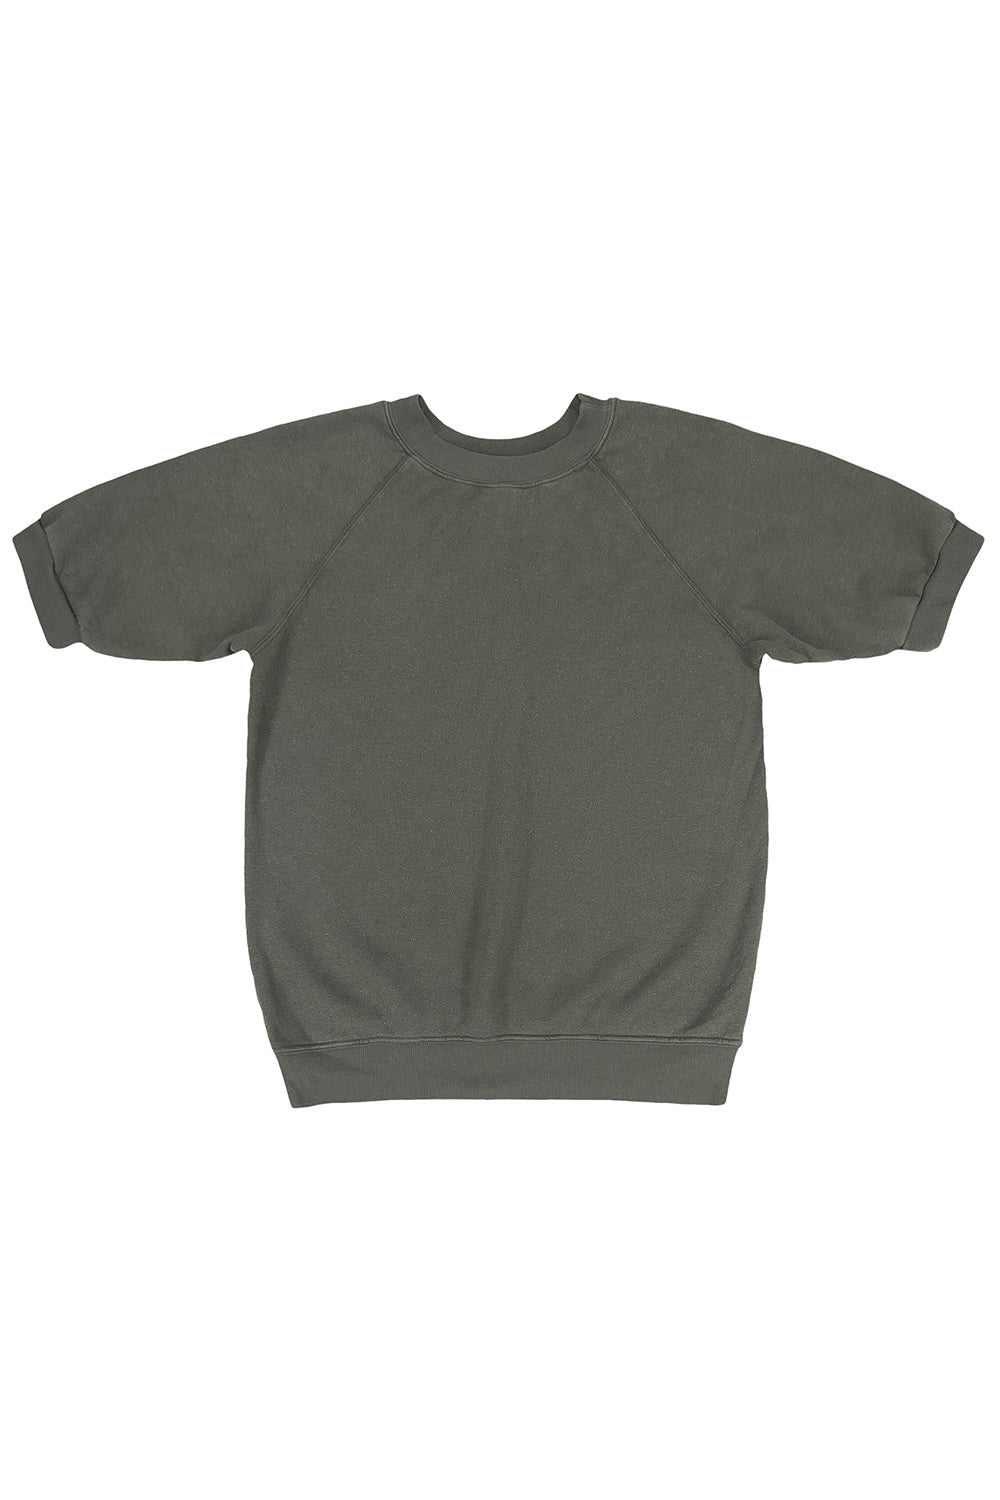 Short Sleeve Raglan Fleece Sweatshirt | Jungmaven Hemp Clothing & Accessories / Color: Olive Green